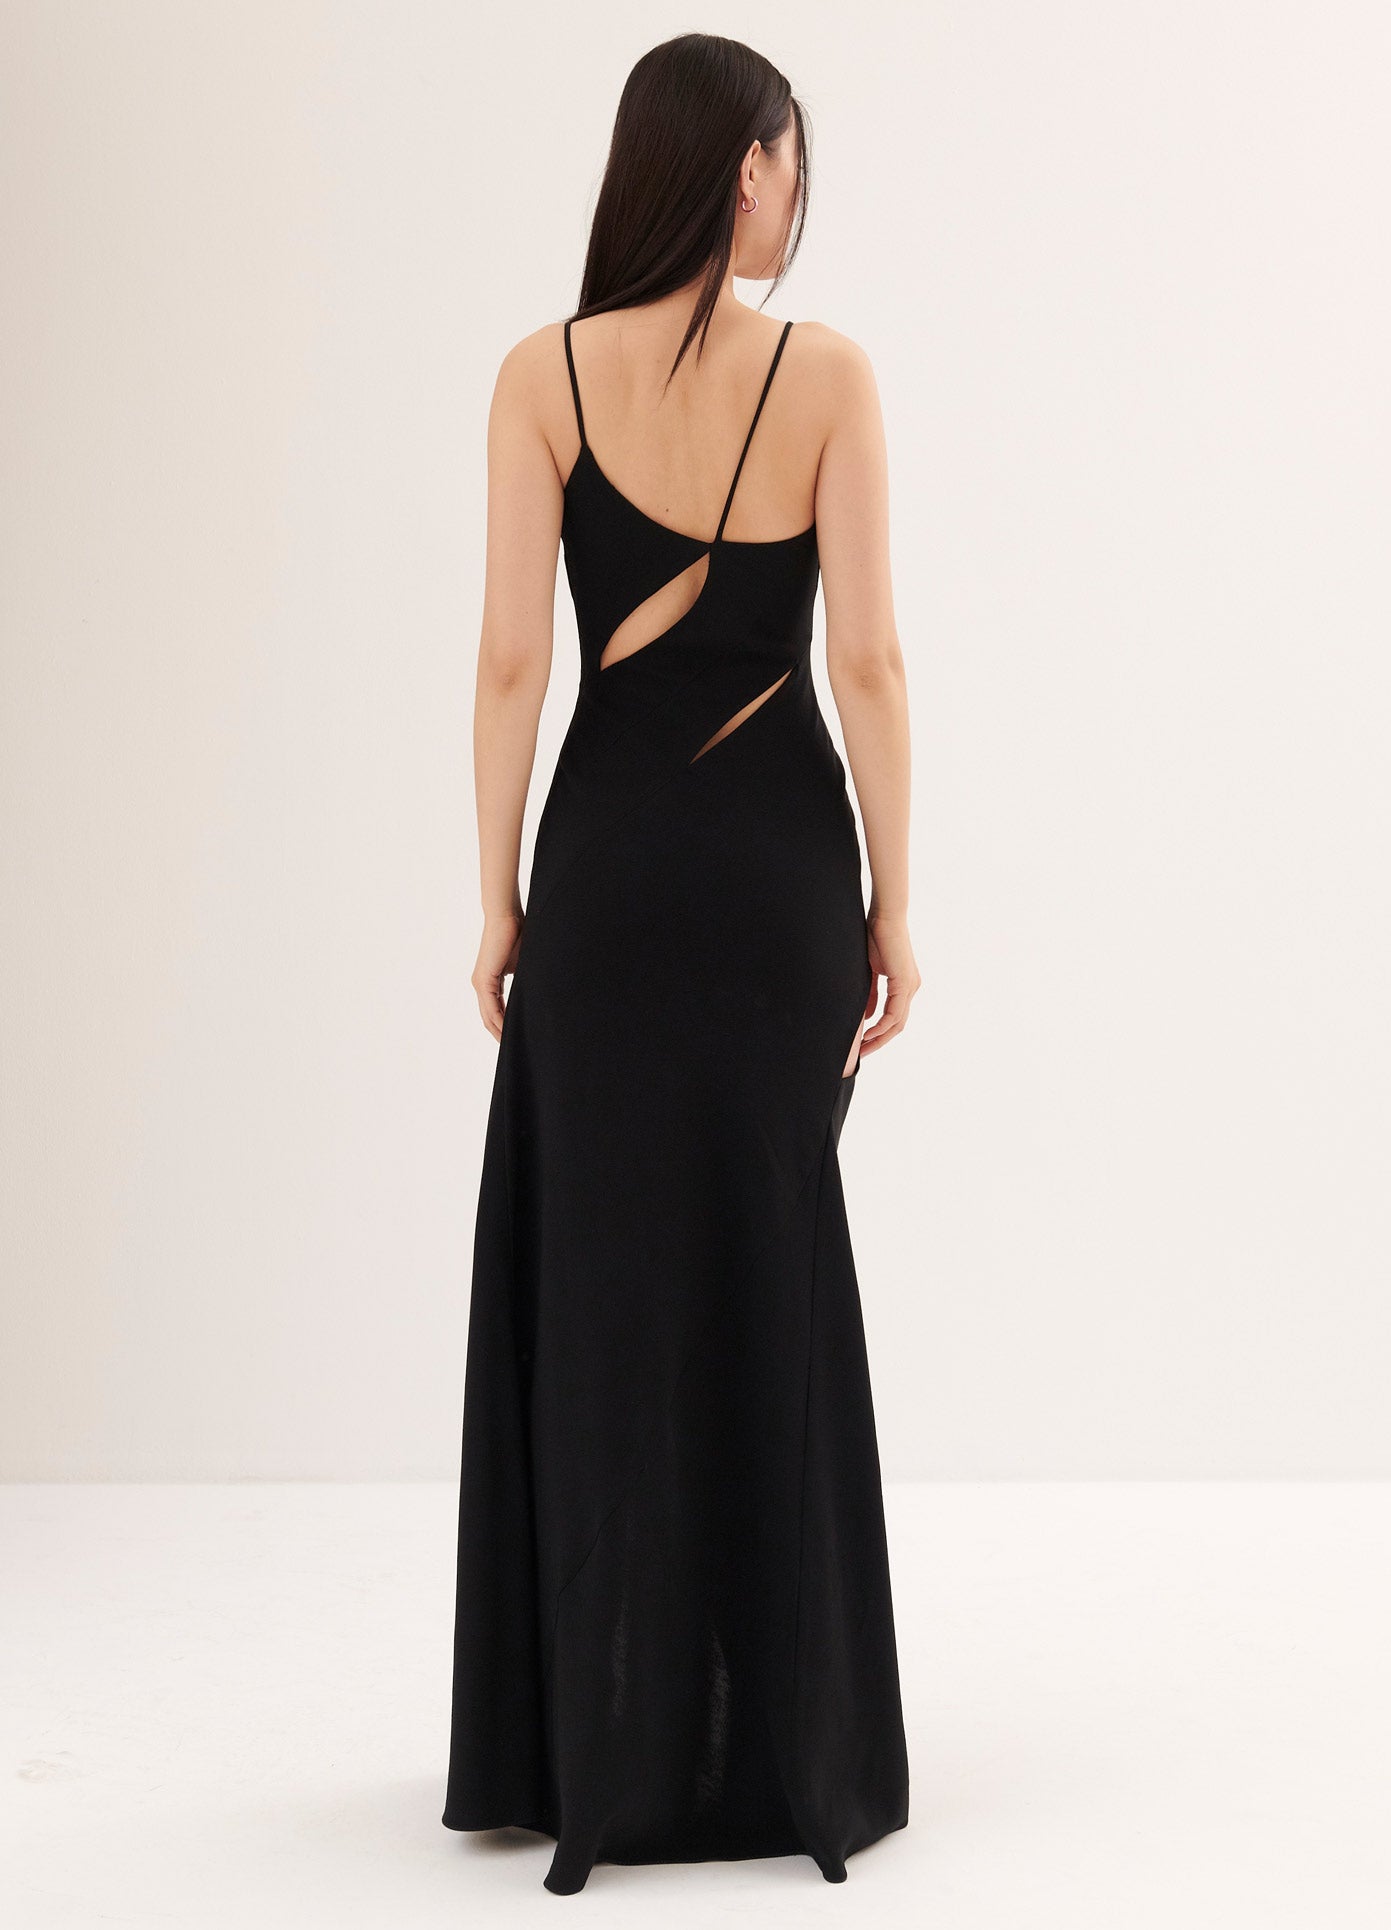 MONSE Slip Dress in Black on Model Full Back View